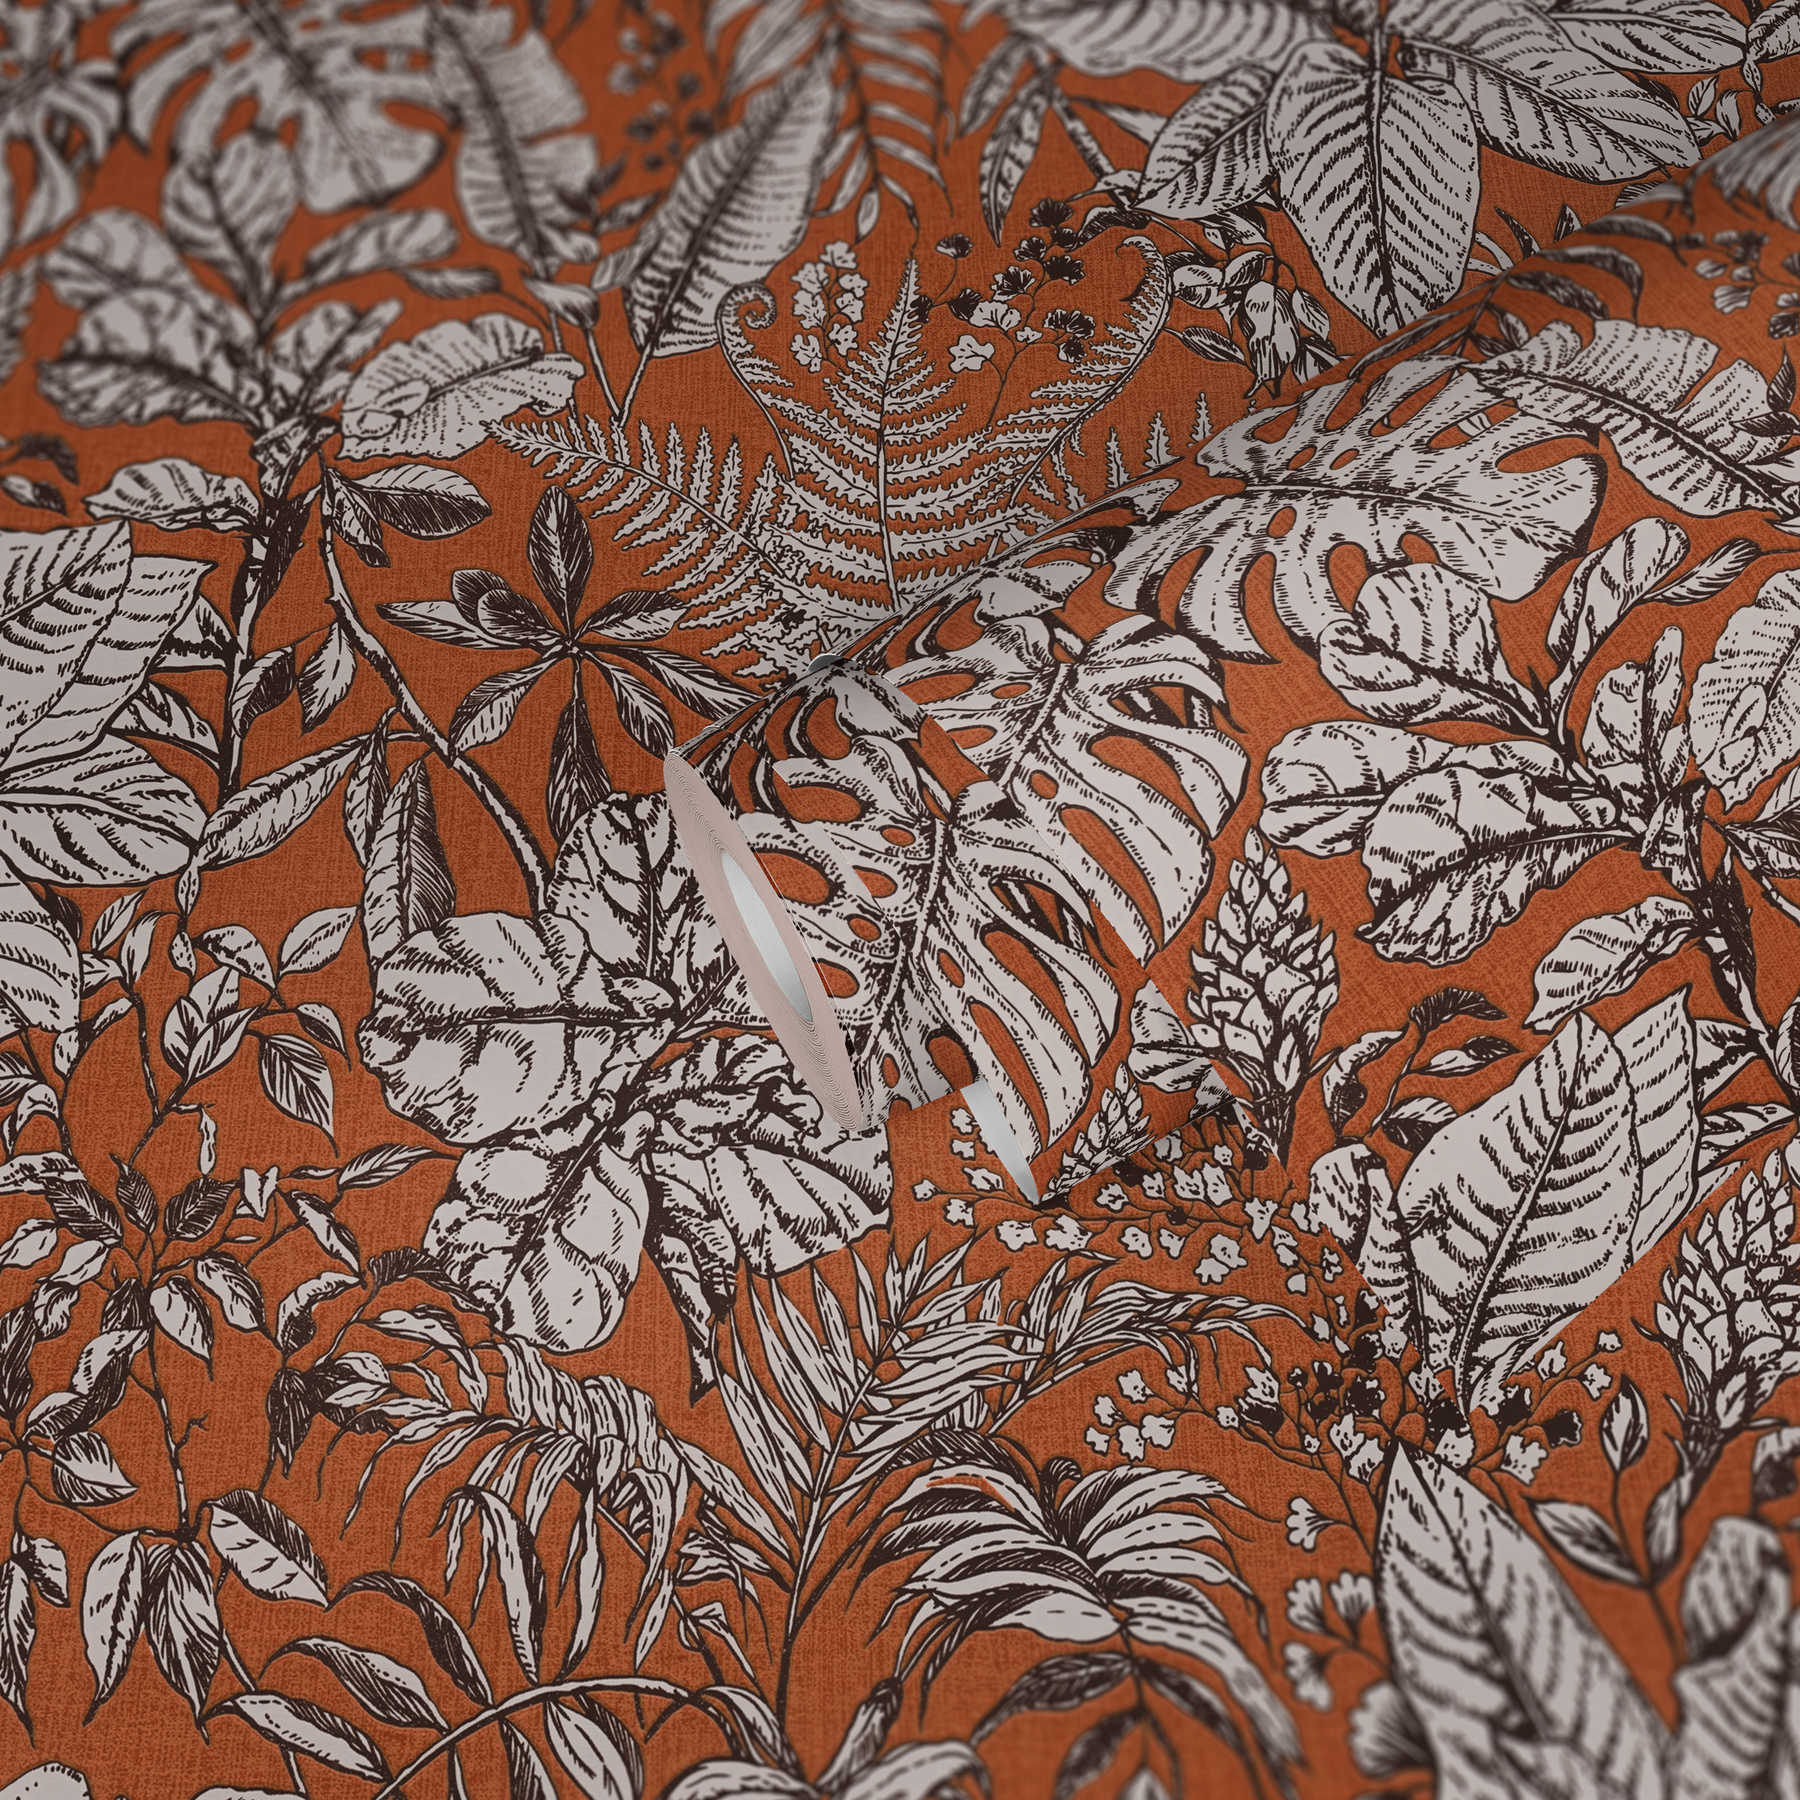             Mustertapete Dschungel Blätter, Monstera & Farne – Orange, Weiß, Braun
        